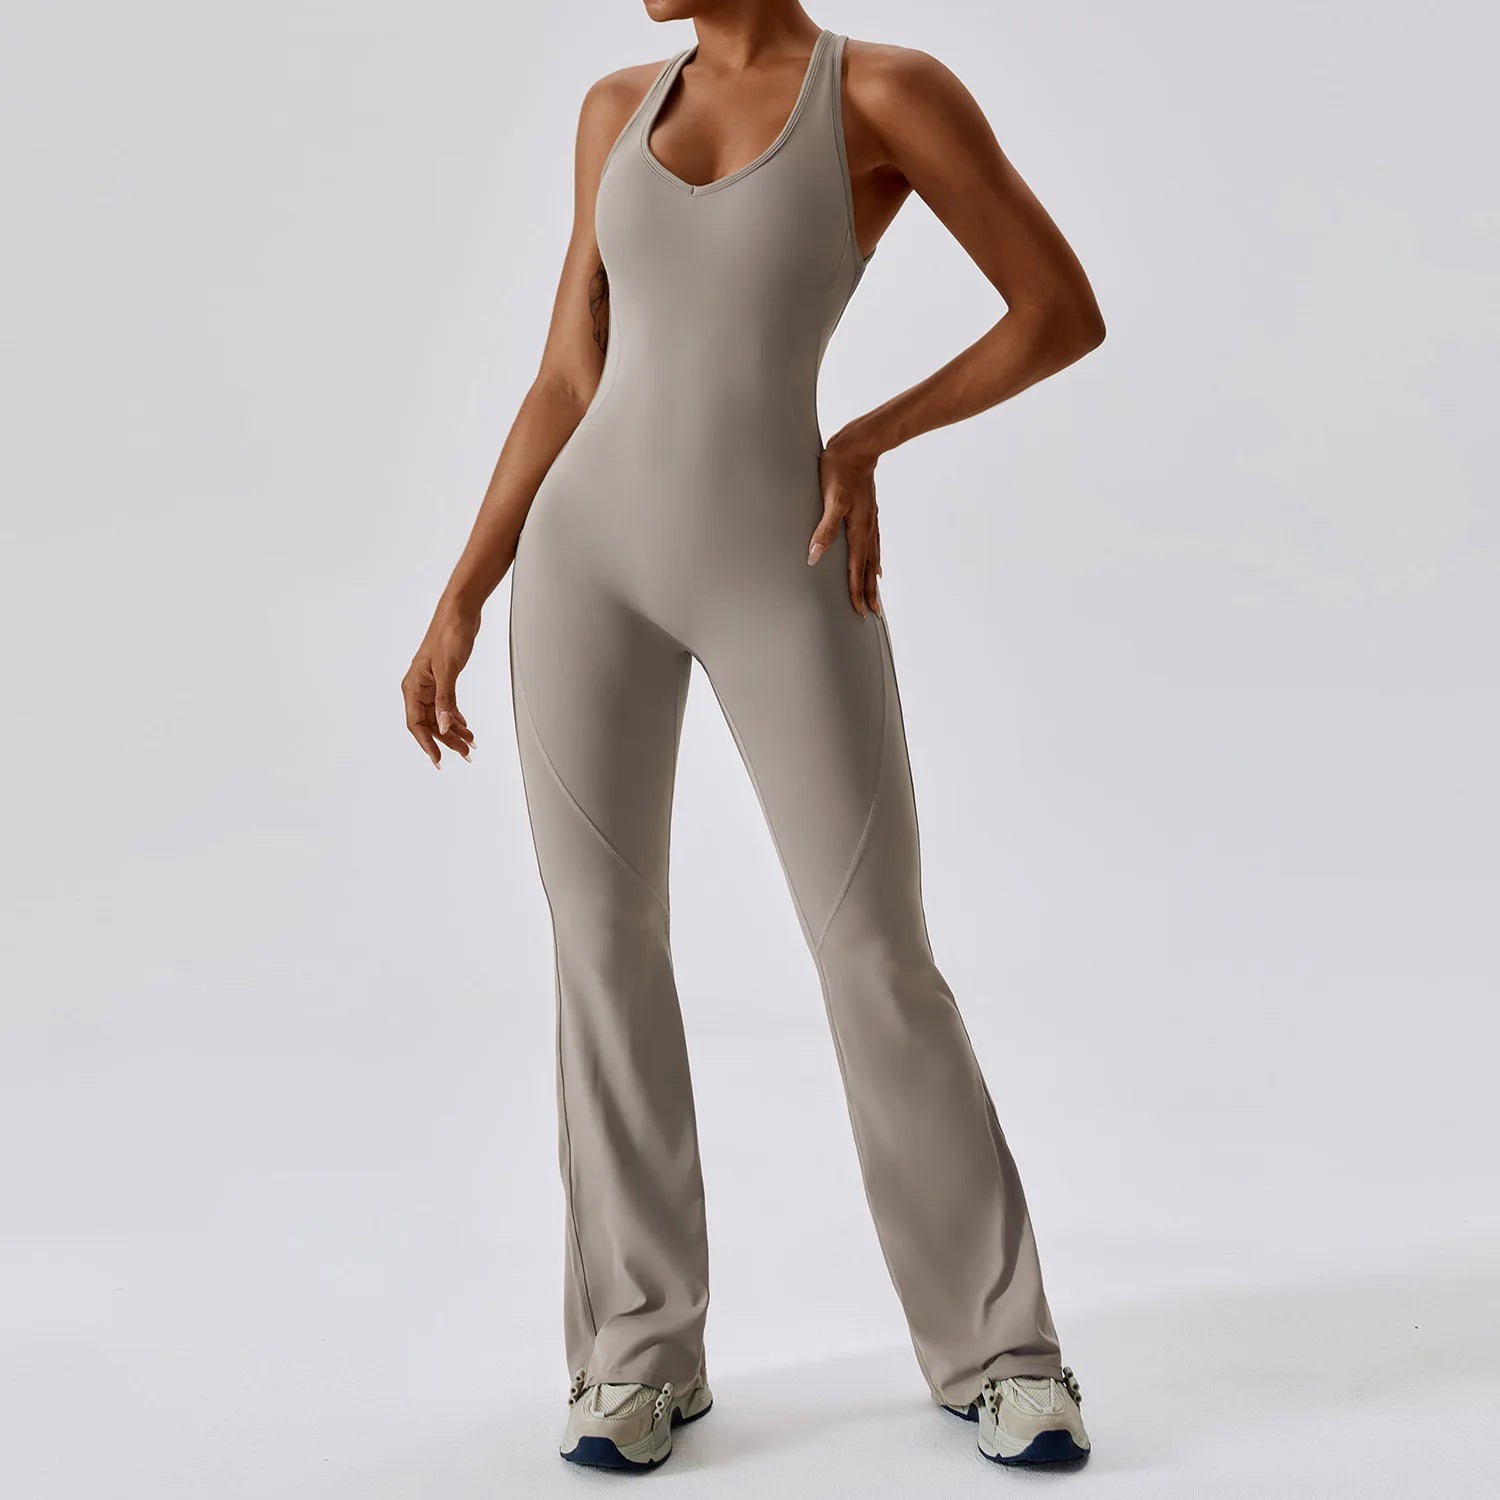 TEEK - Free Feeling Stretch Bodysuit JUMPSUIT theteekdotcom Flaxen S 